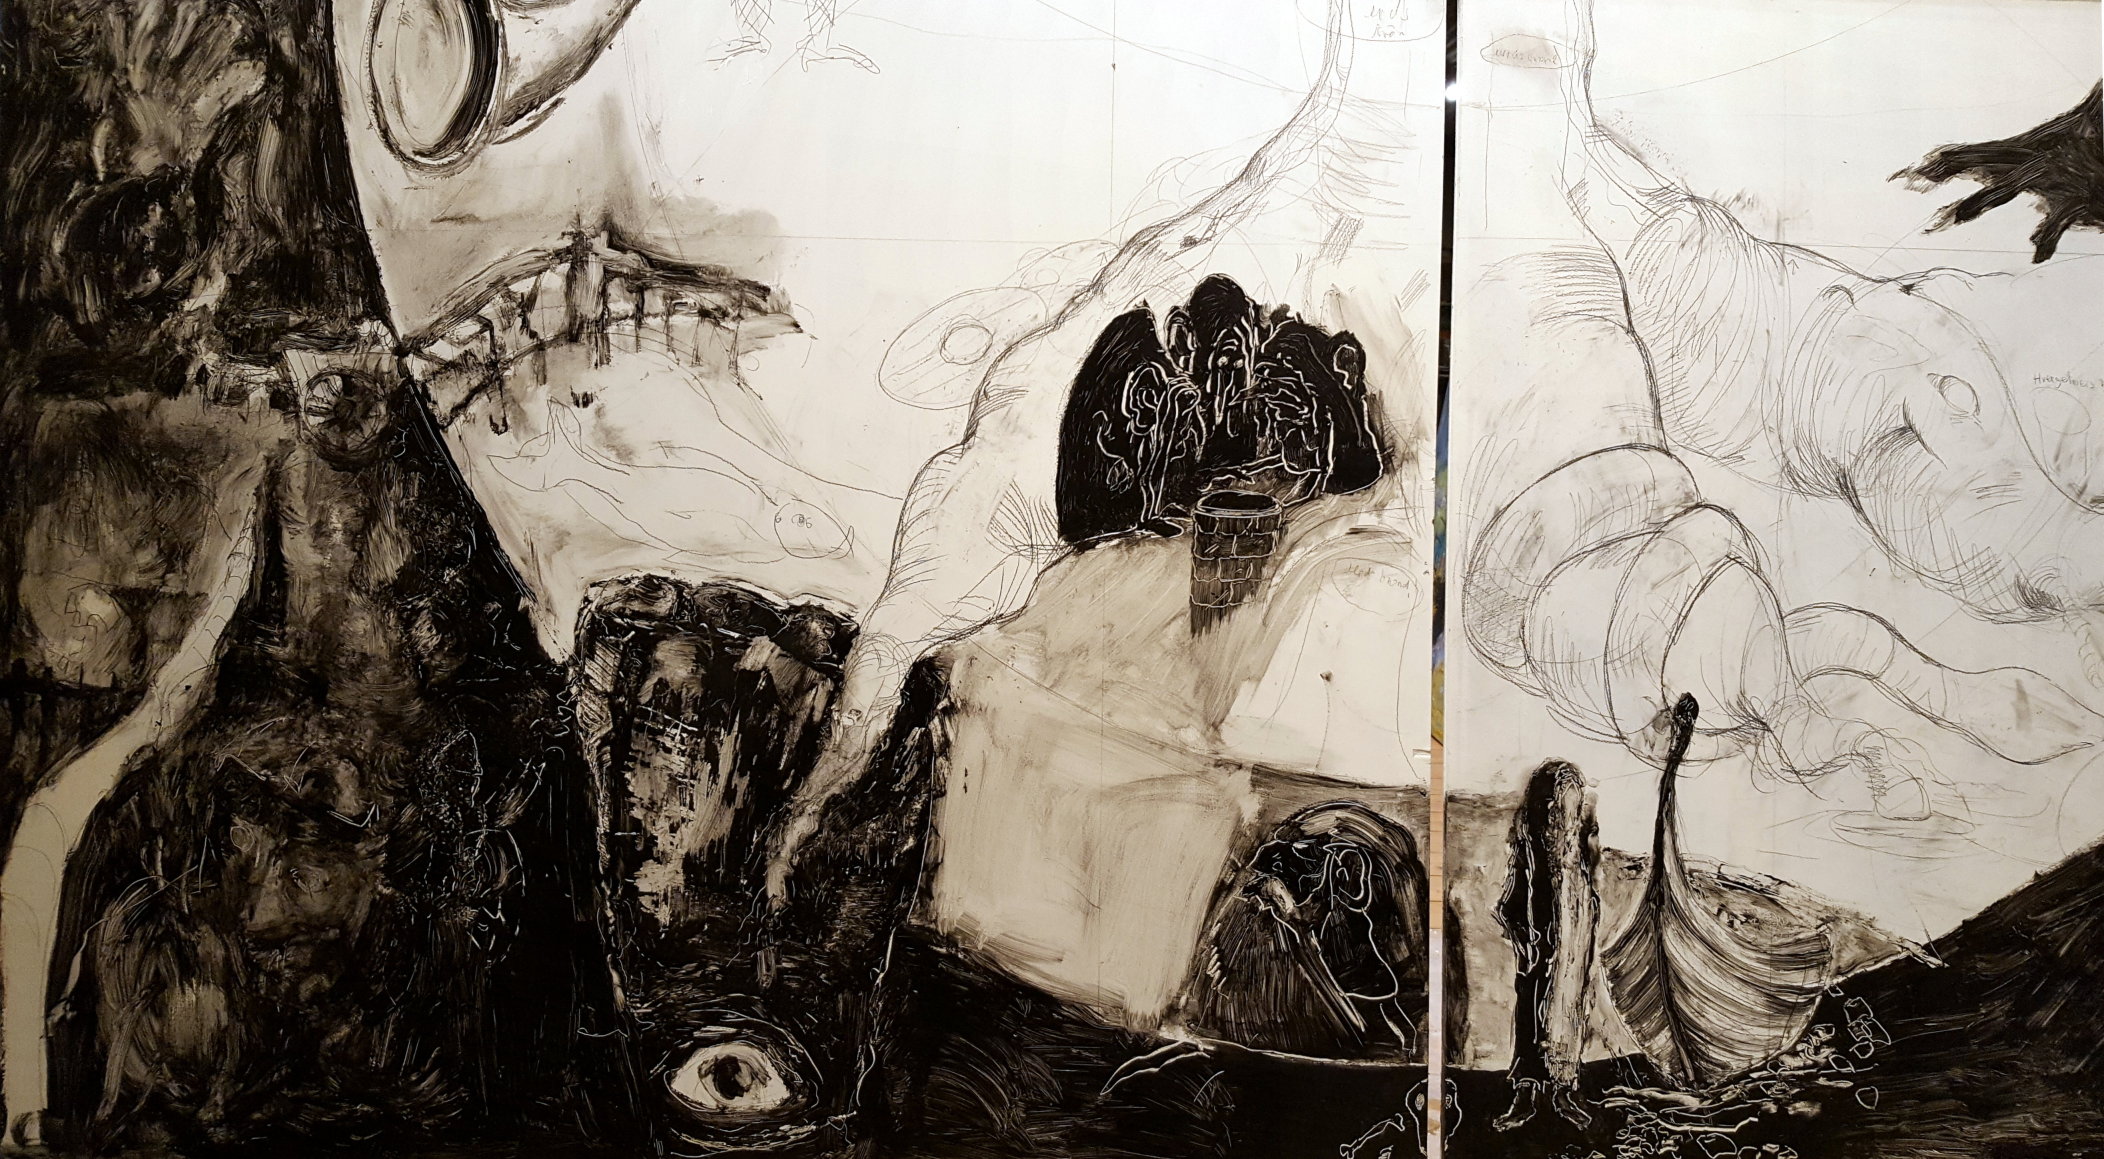 Detalje fra værket  Verdenstræet - Yggdrasil, der blev udført sammen med min søn Niels Glenhammer